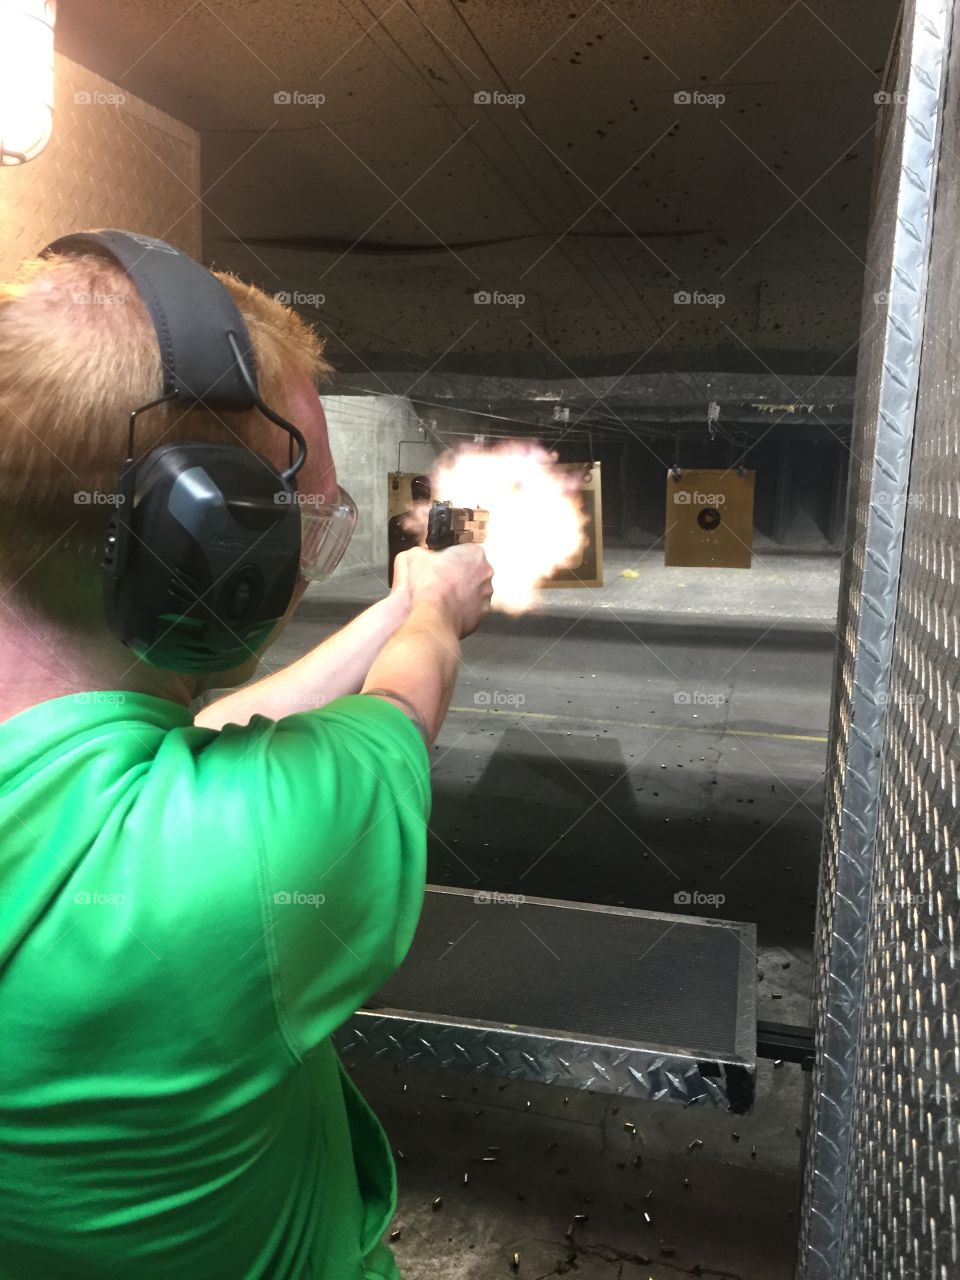 Gun Shoot Range Flame. Shooting a Sig Sauer 9mm Pistol 